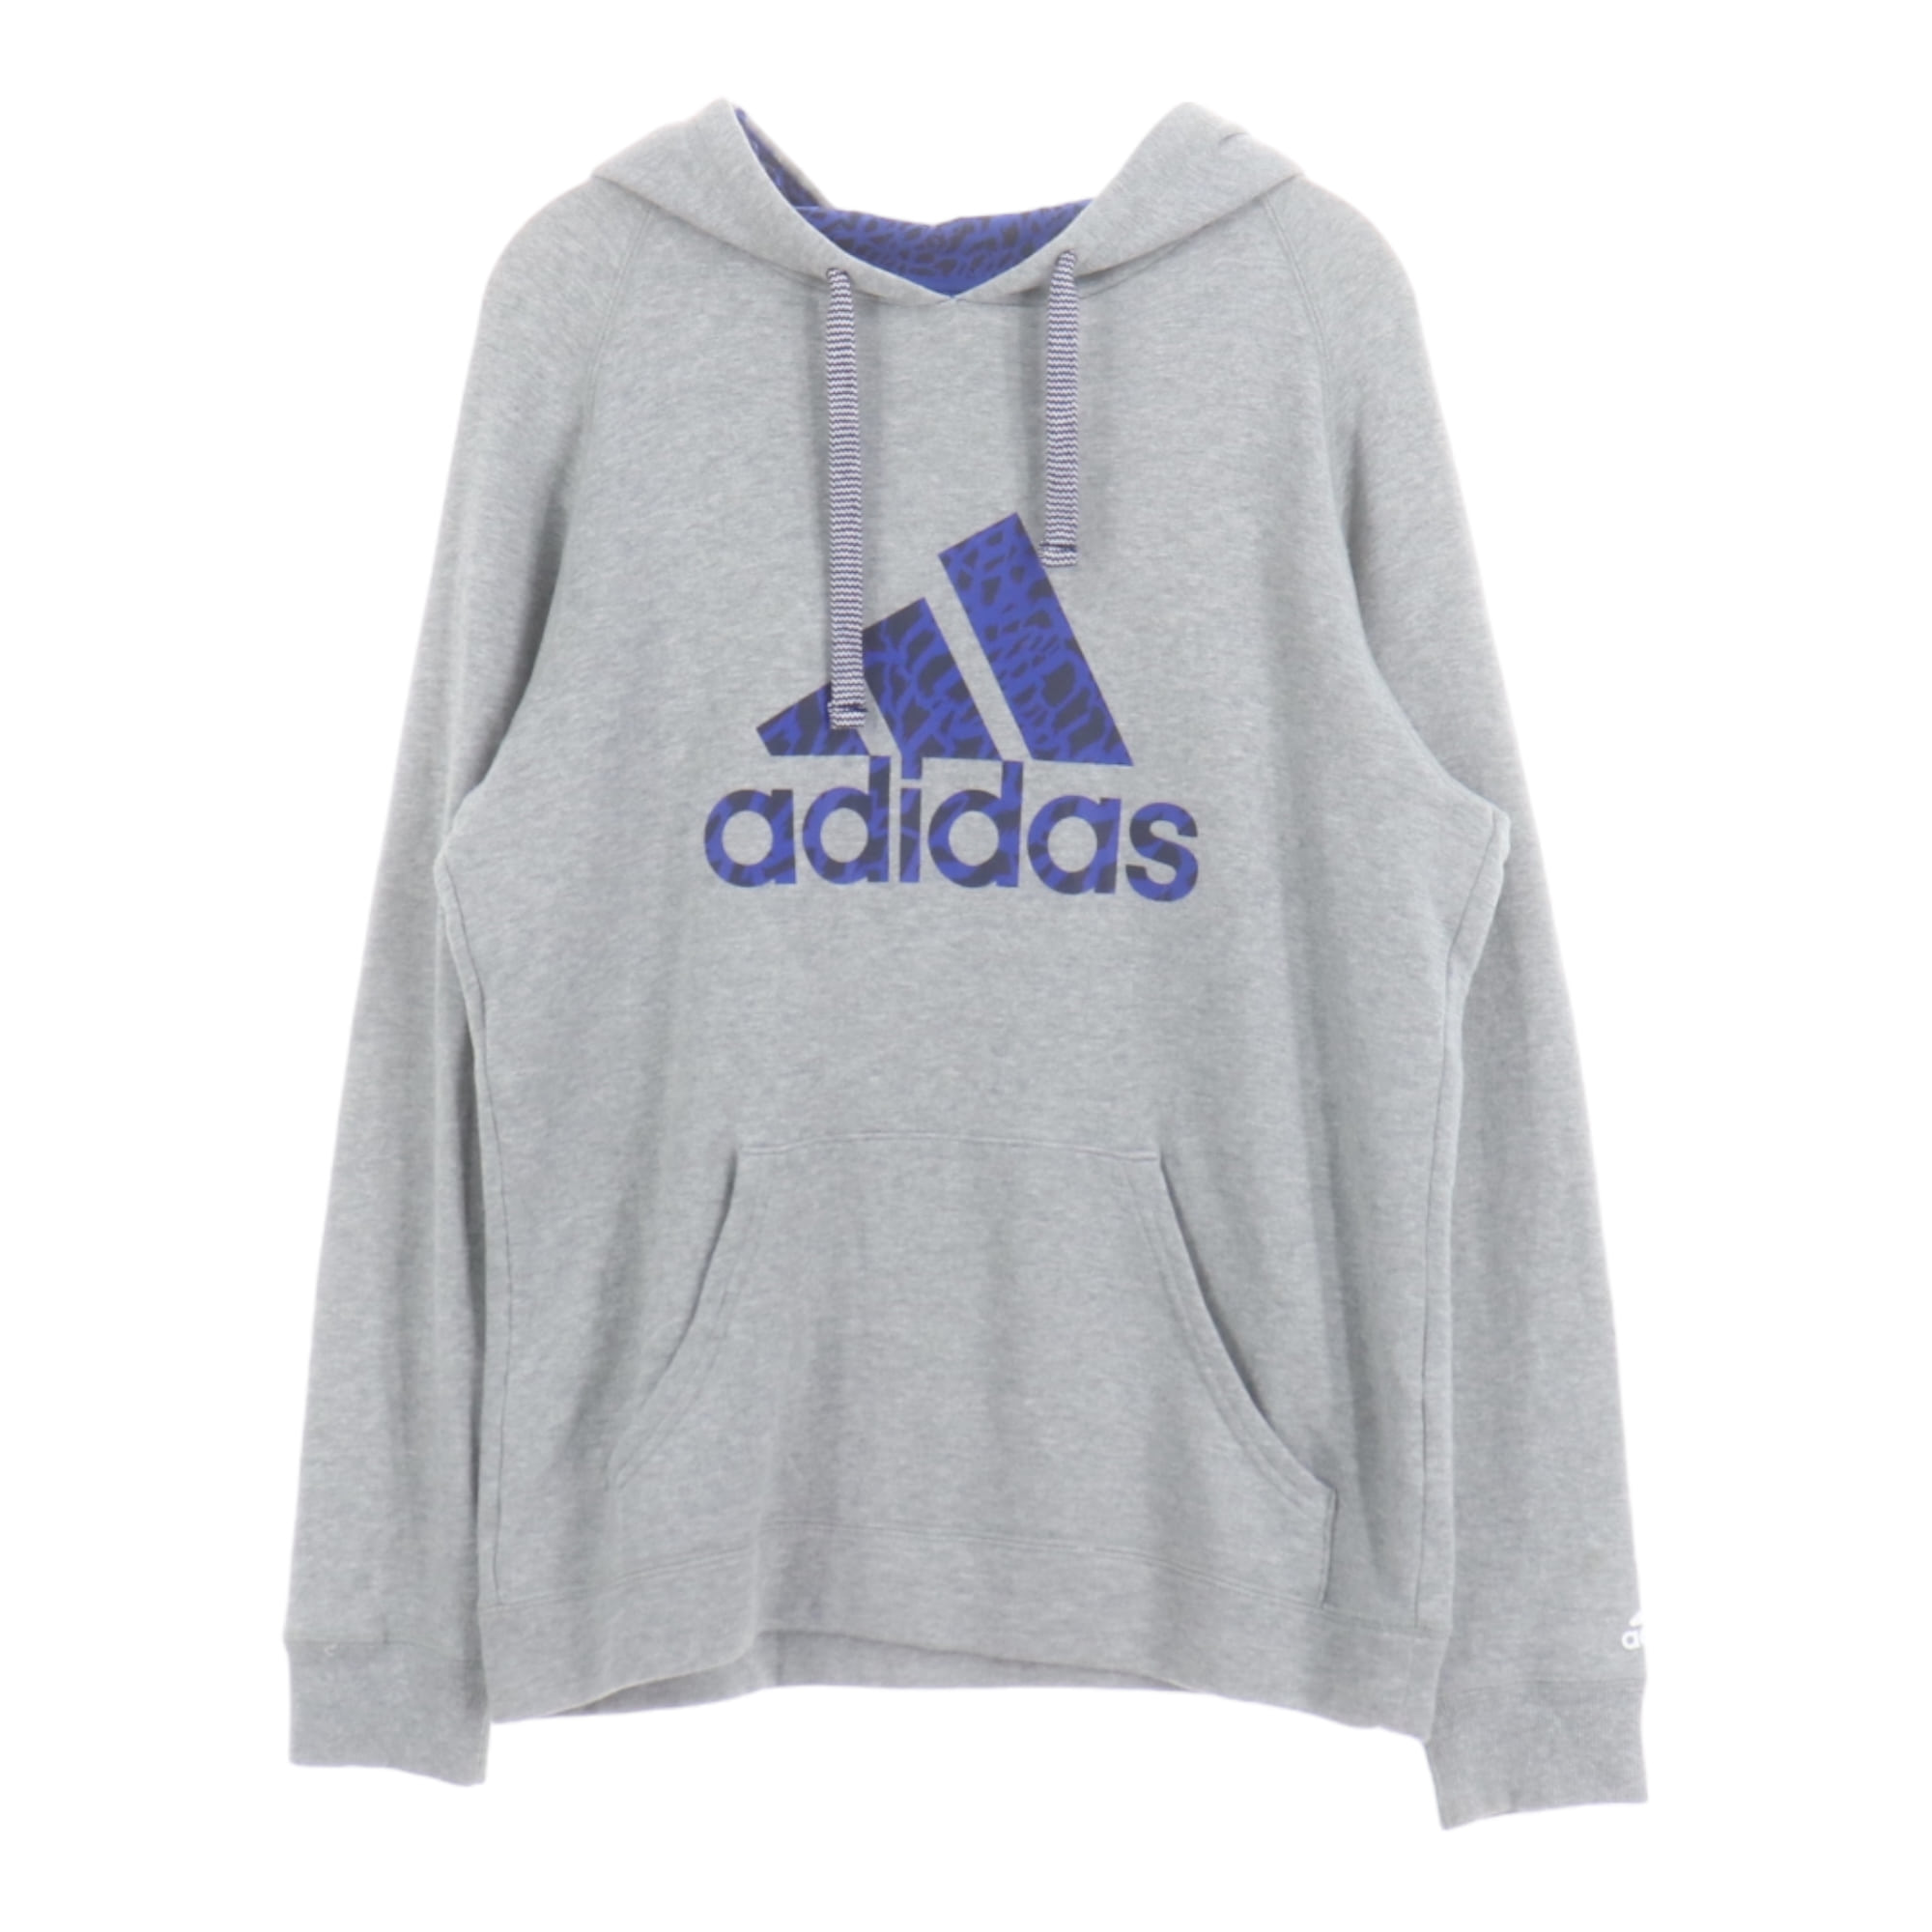 Adidas,Sweatshirts/Hoodies